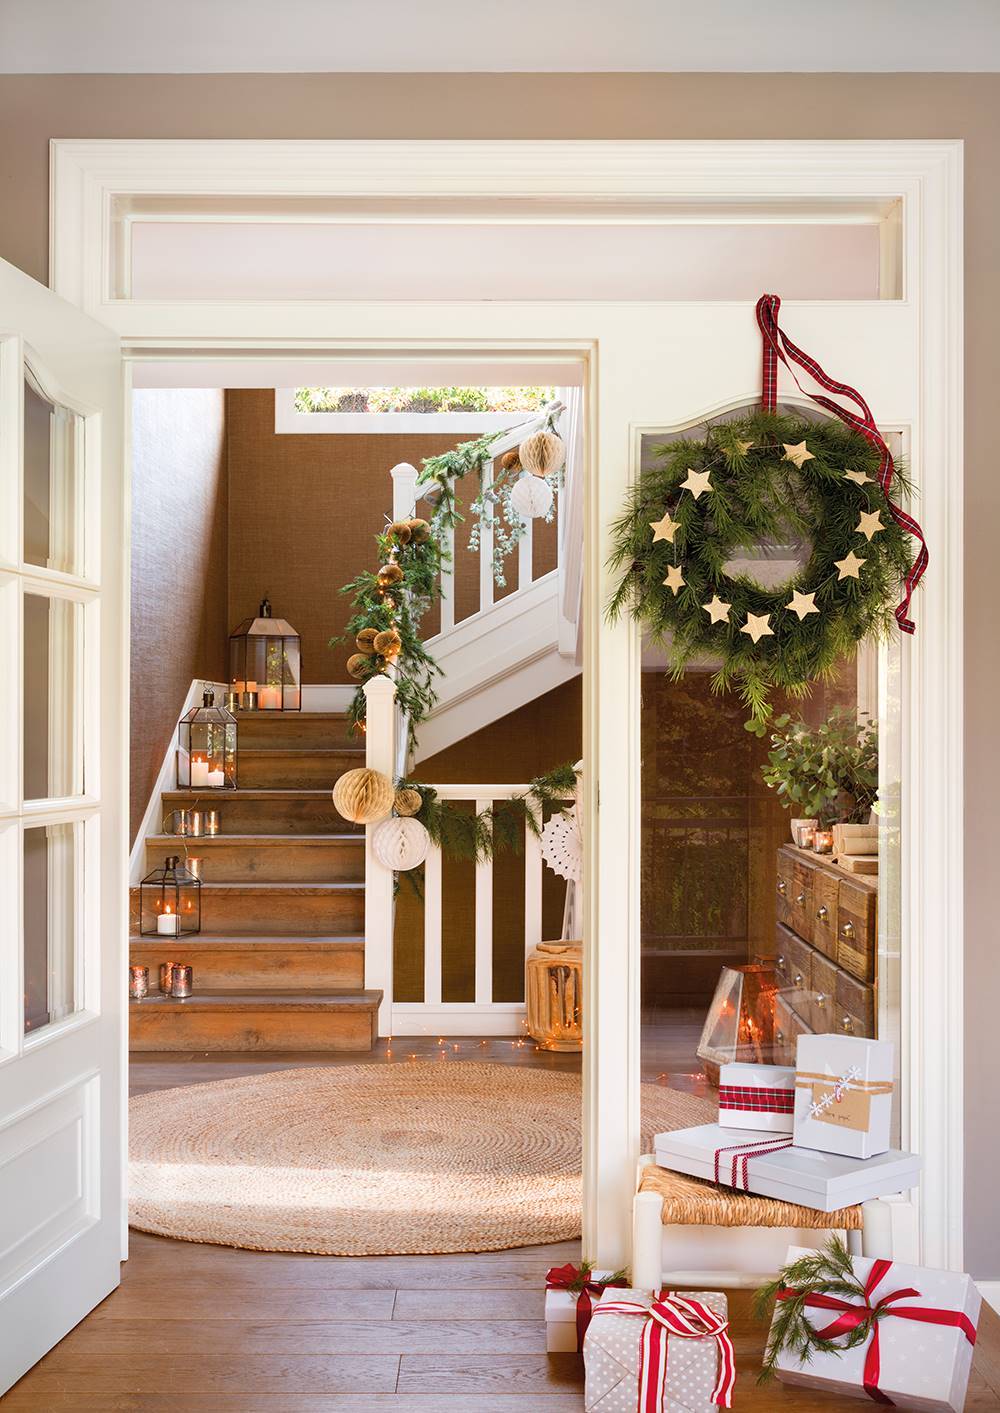 Recibidor con puerta corona de Navidad, regalos y guirnalda en la escalera.